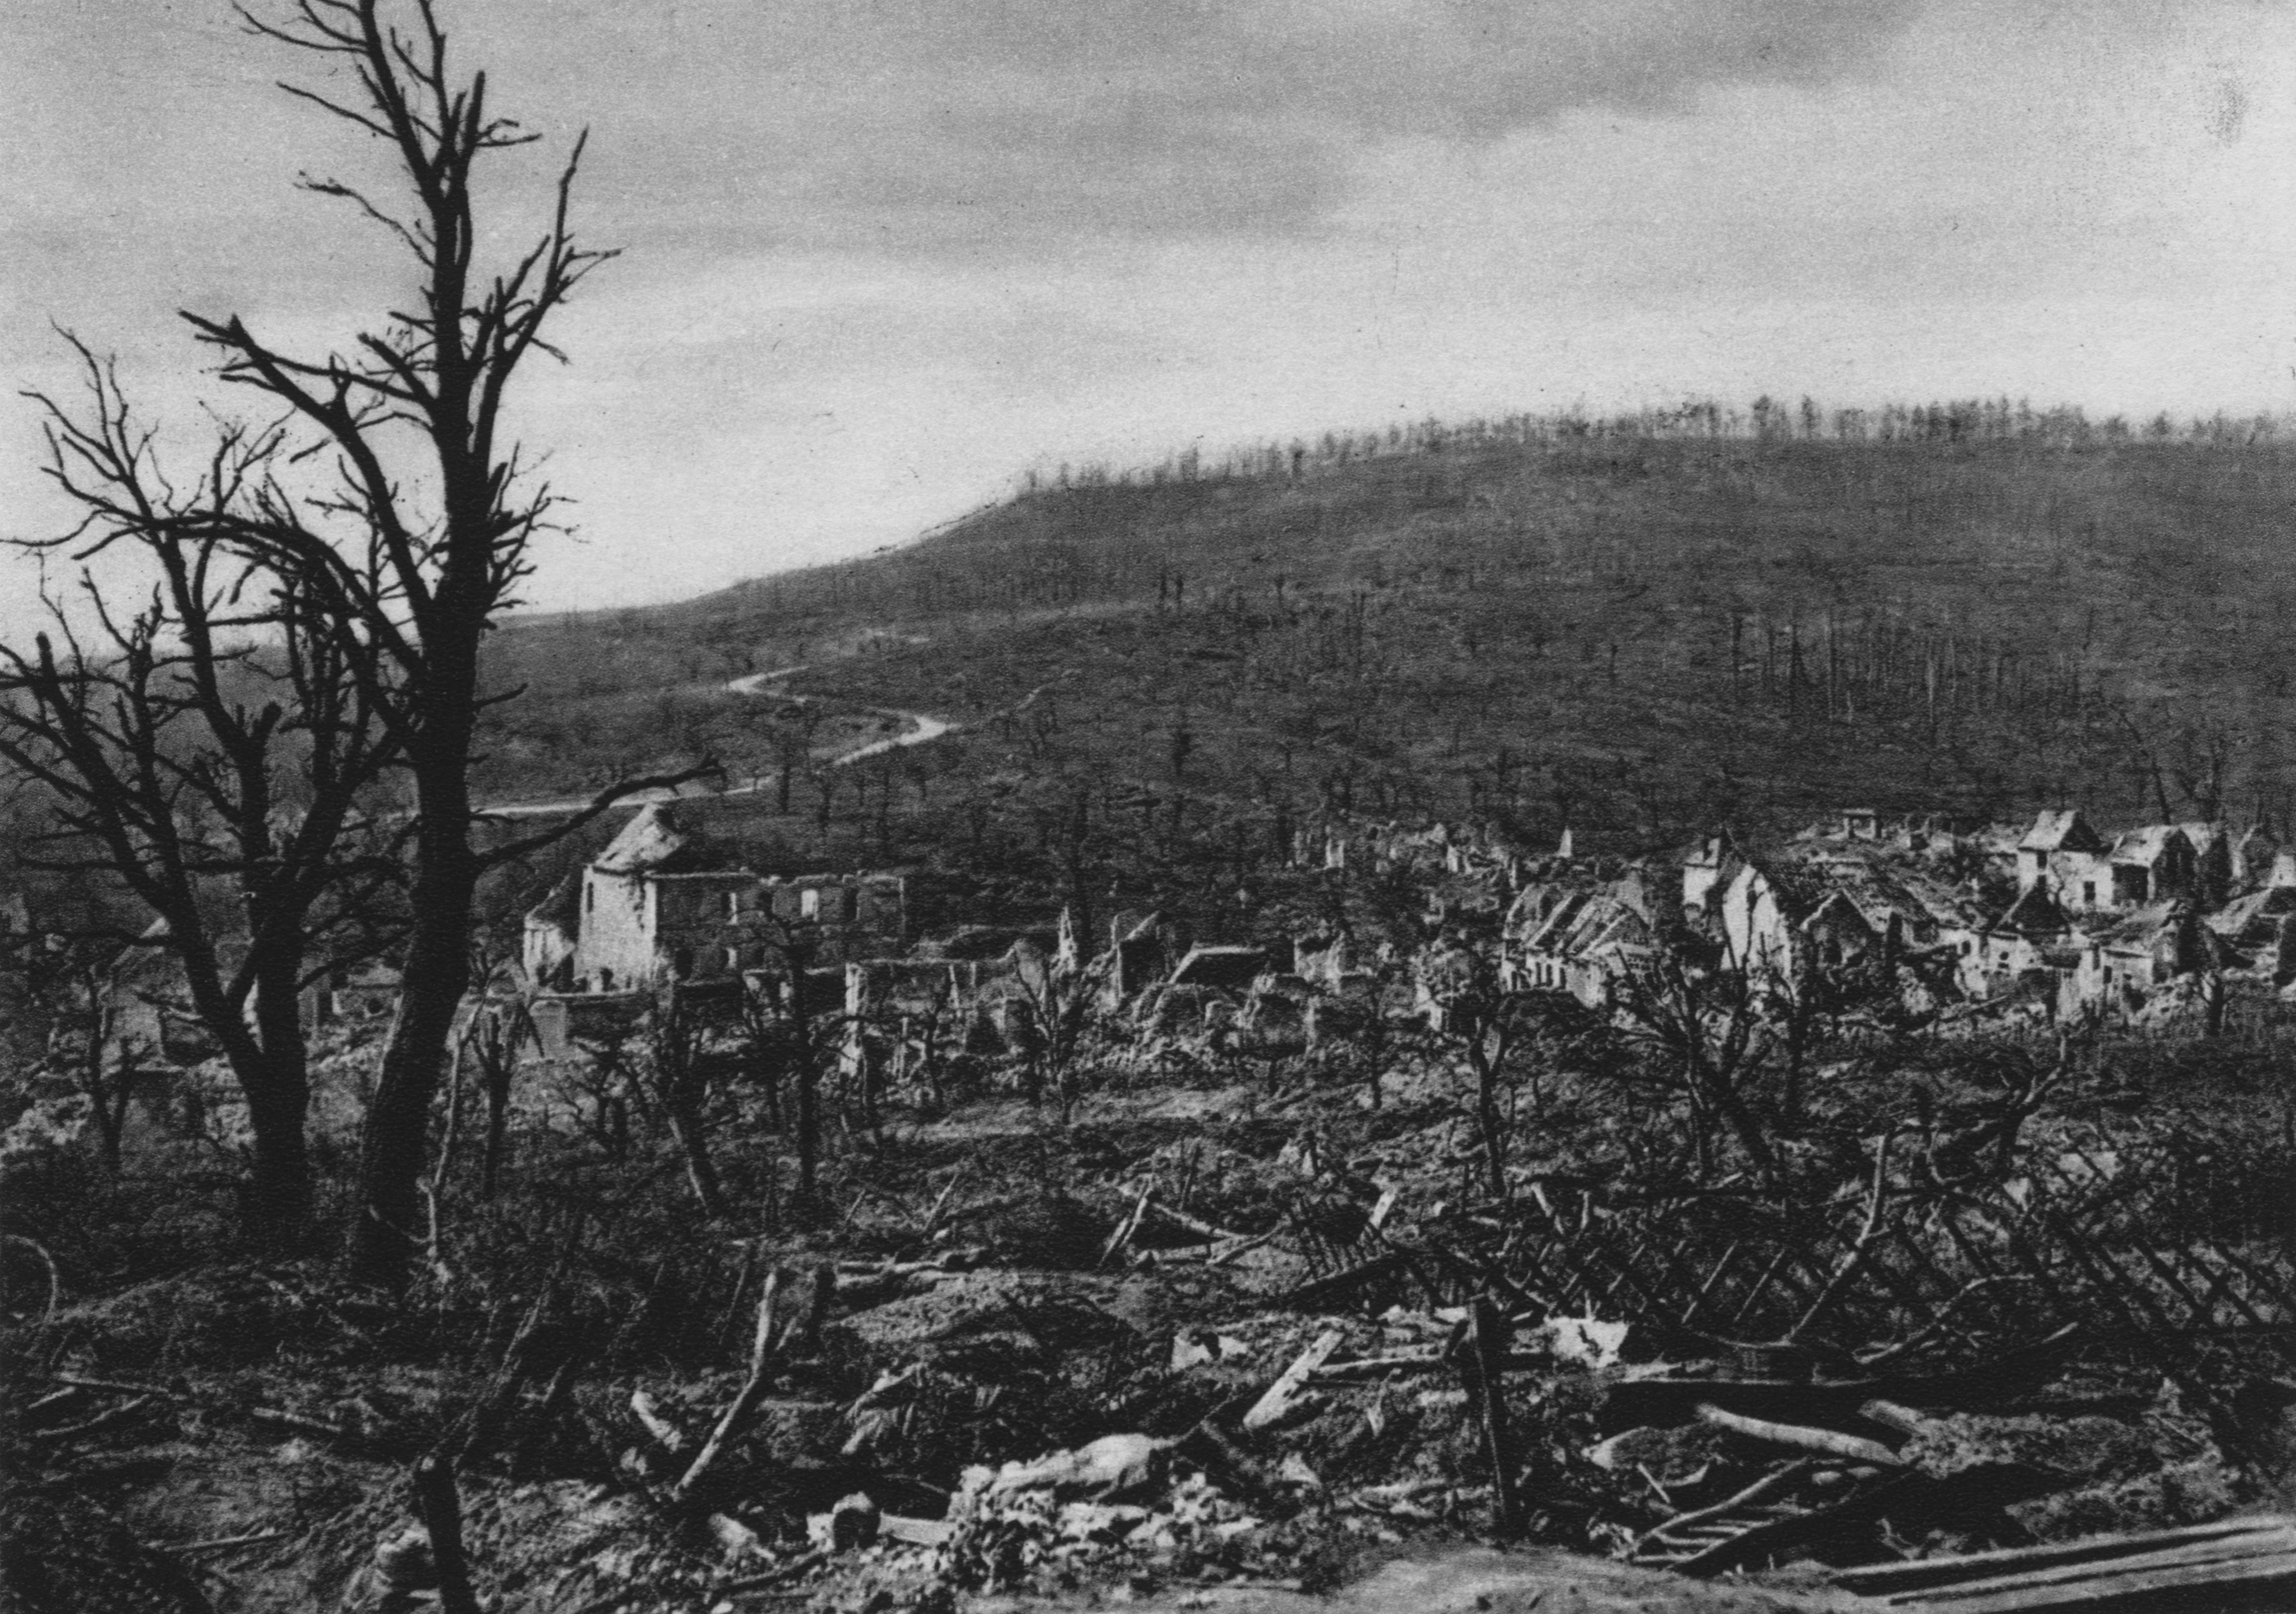 Fotografia dau vilatge Soupir après lei bombardaments francés e alemands de la batalha dau Camin dei Damas.